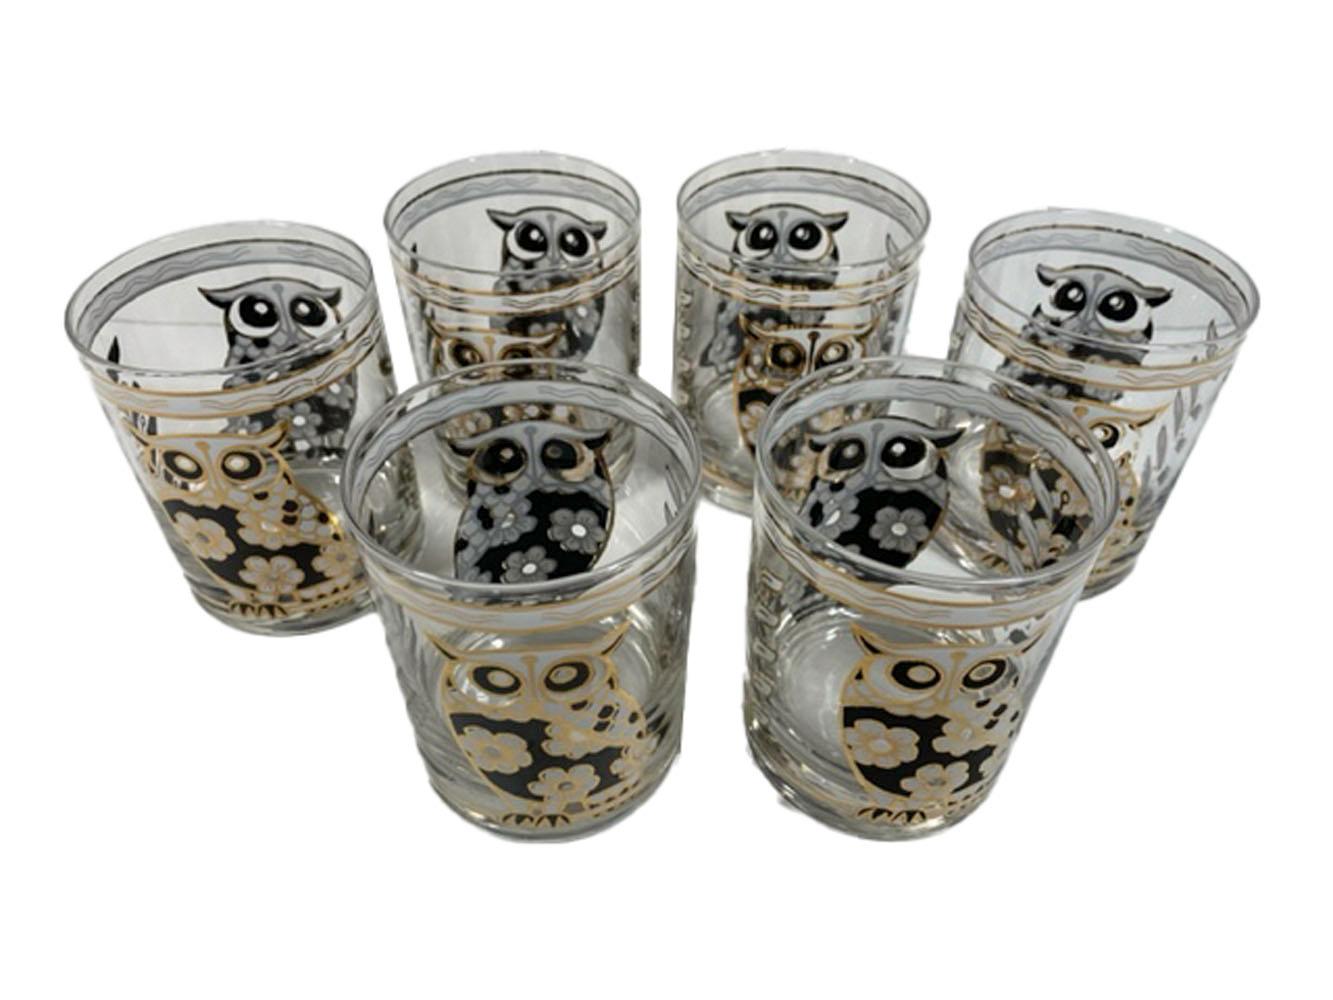 Six verres à pied vintage de Cera Glassware décorés en émail noir et blanc avec des détails en or 22 carats. Chaque verre comporte un hibou à l'avant et à l'arrière, en émail noir et blanc avec un motif de fleurs de cerisier composant leur corps et